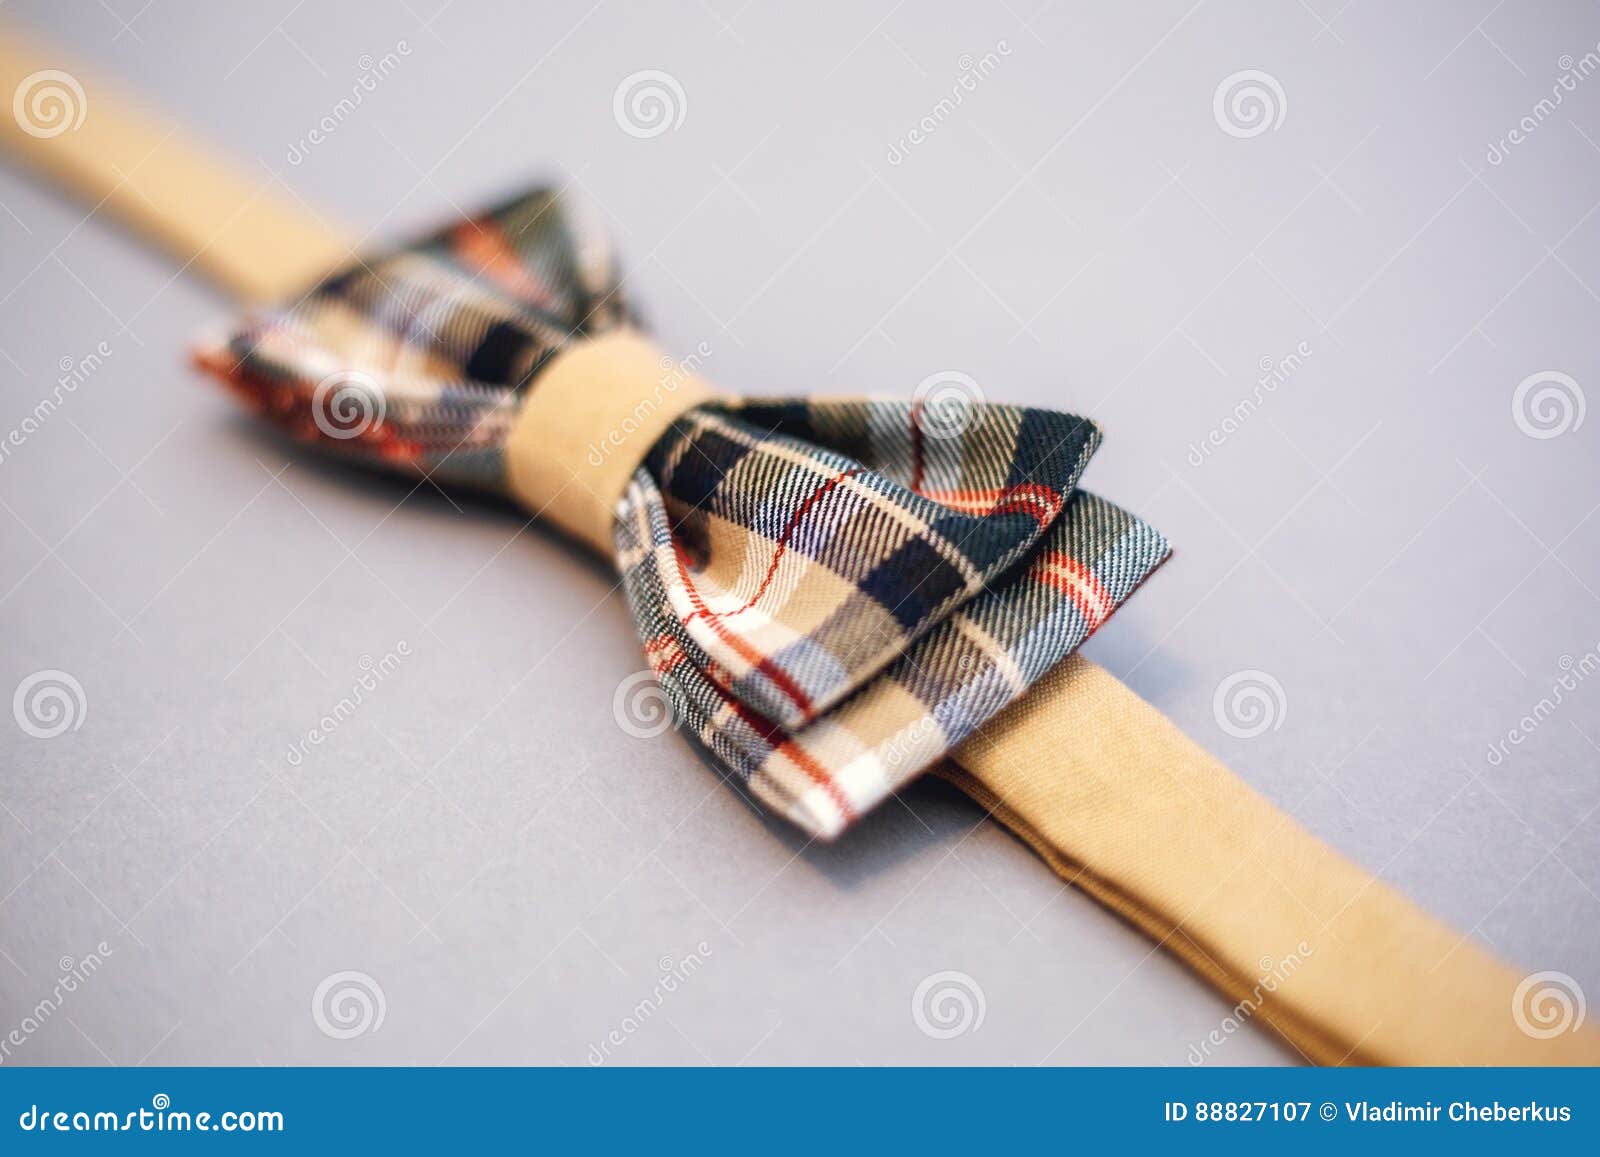 Stylish Bowtie Soft Cloth Ribbon. Stock Image - Image of soft ...